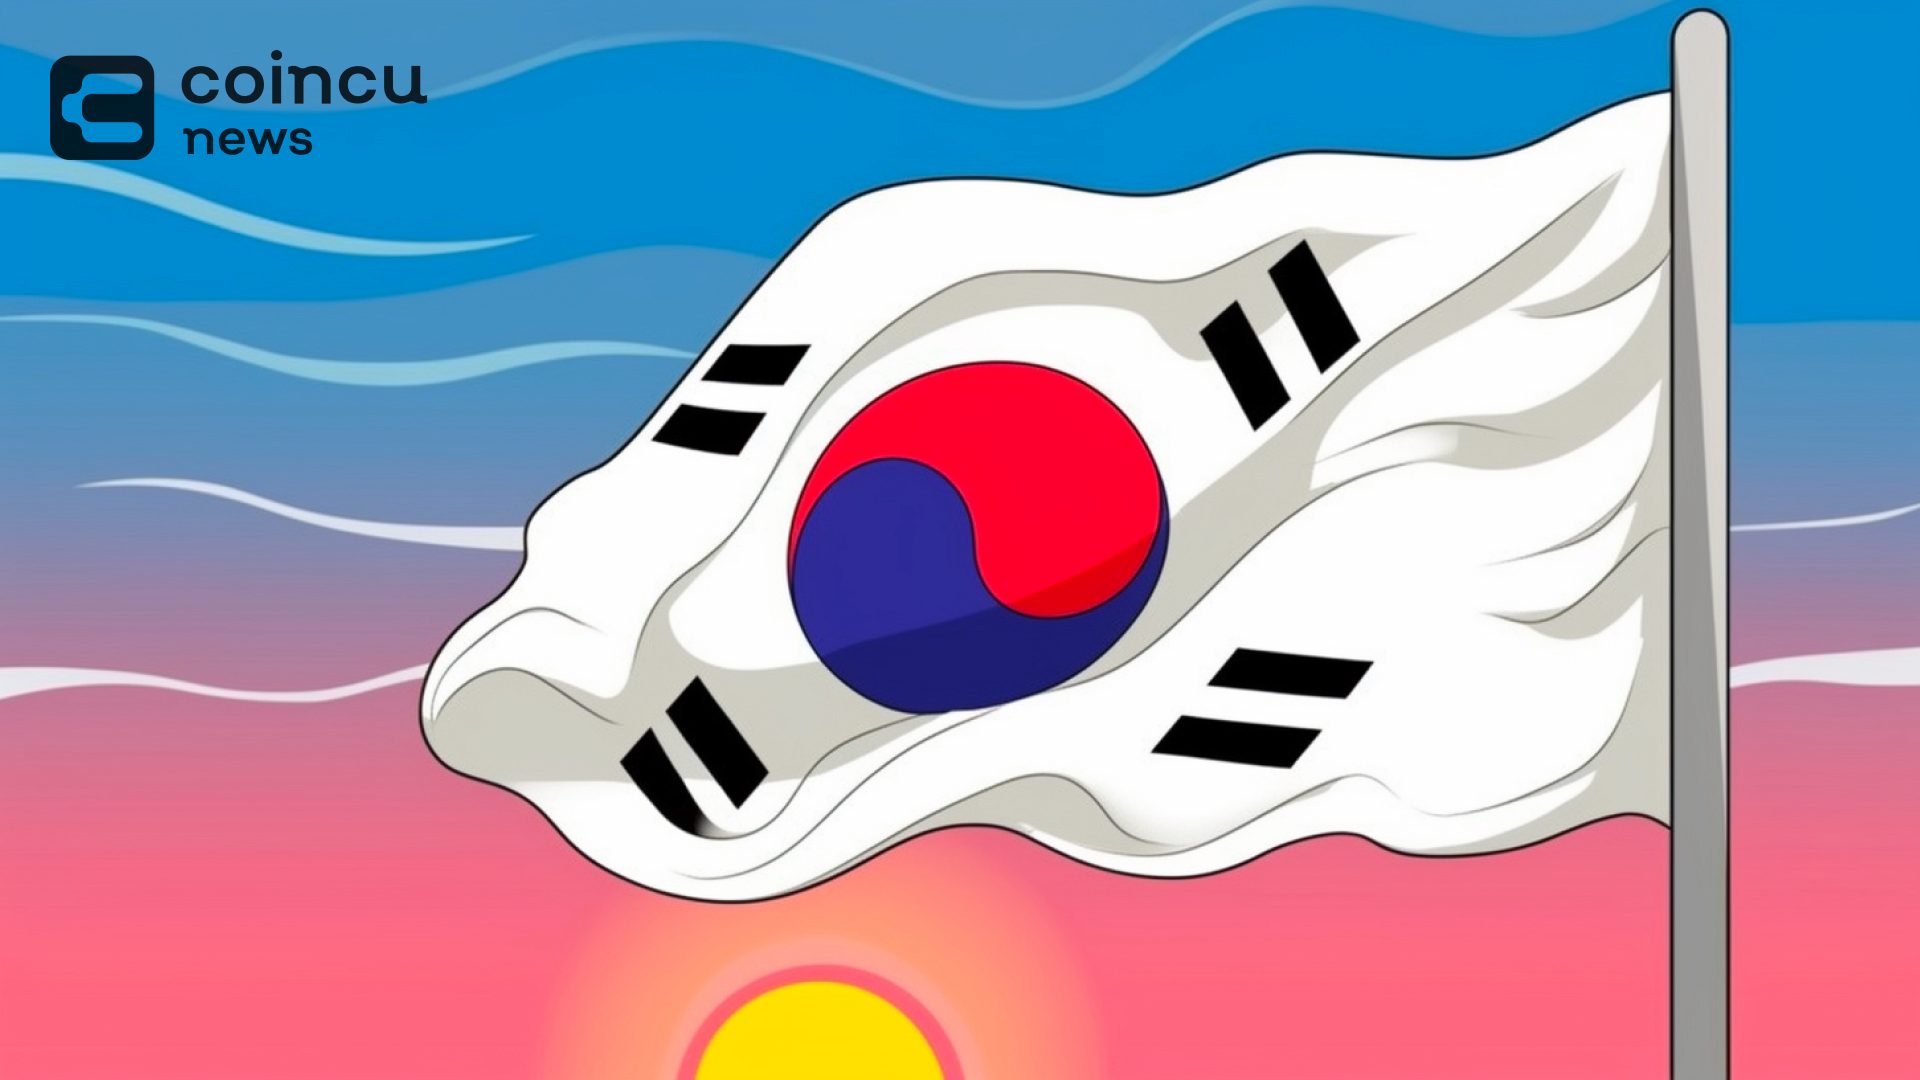 अपबिट ट्रेडिंग वॉल्यूम में बढ़ोतरी, दक्षिण कोरियाई क्रिप्टो बाजार का 80% पर भारी